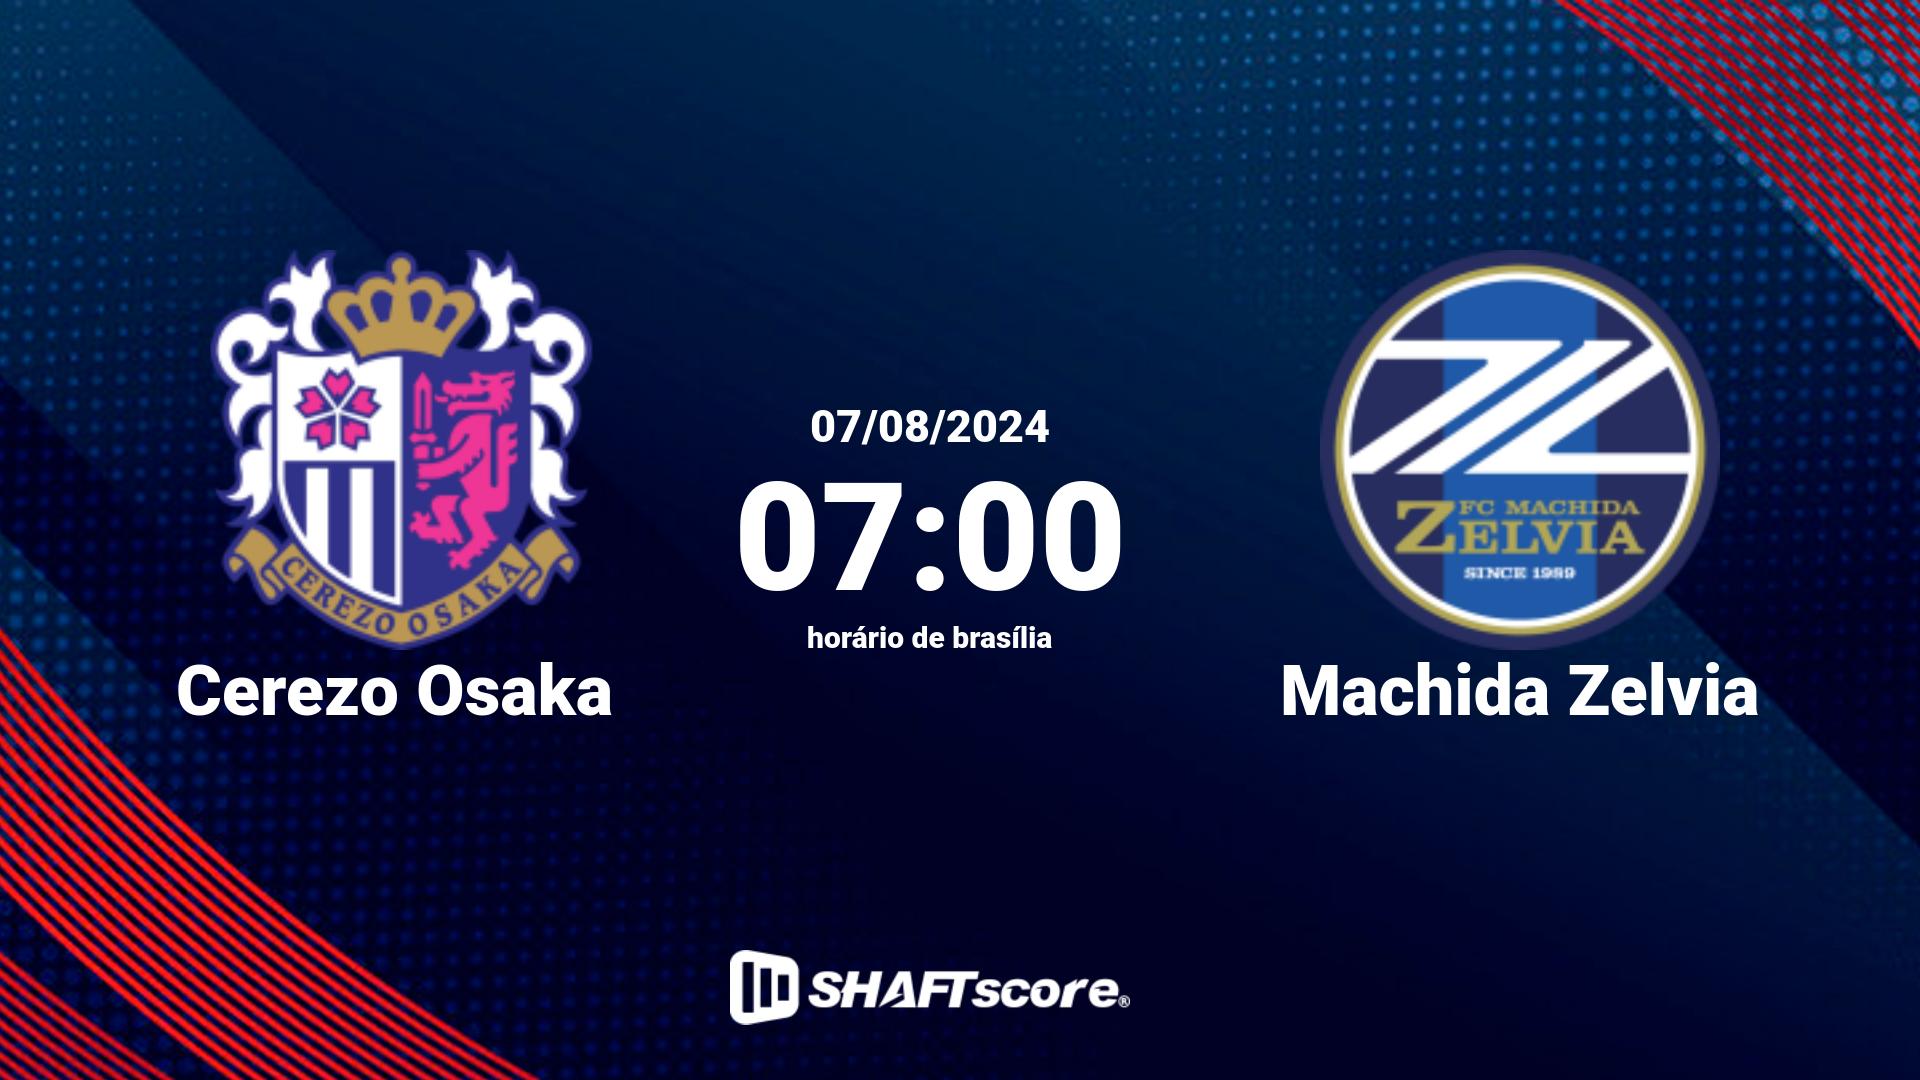 Estatísticas do jogo Cerezo Osaka vs Machida Zelvia 07.08 07:00